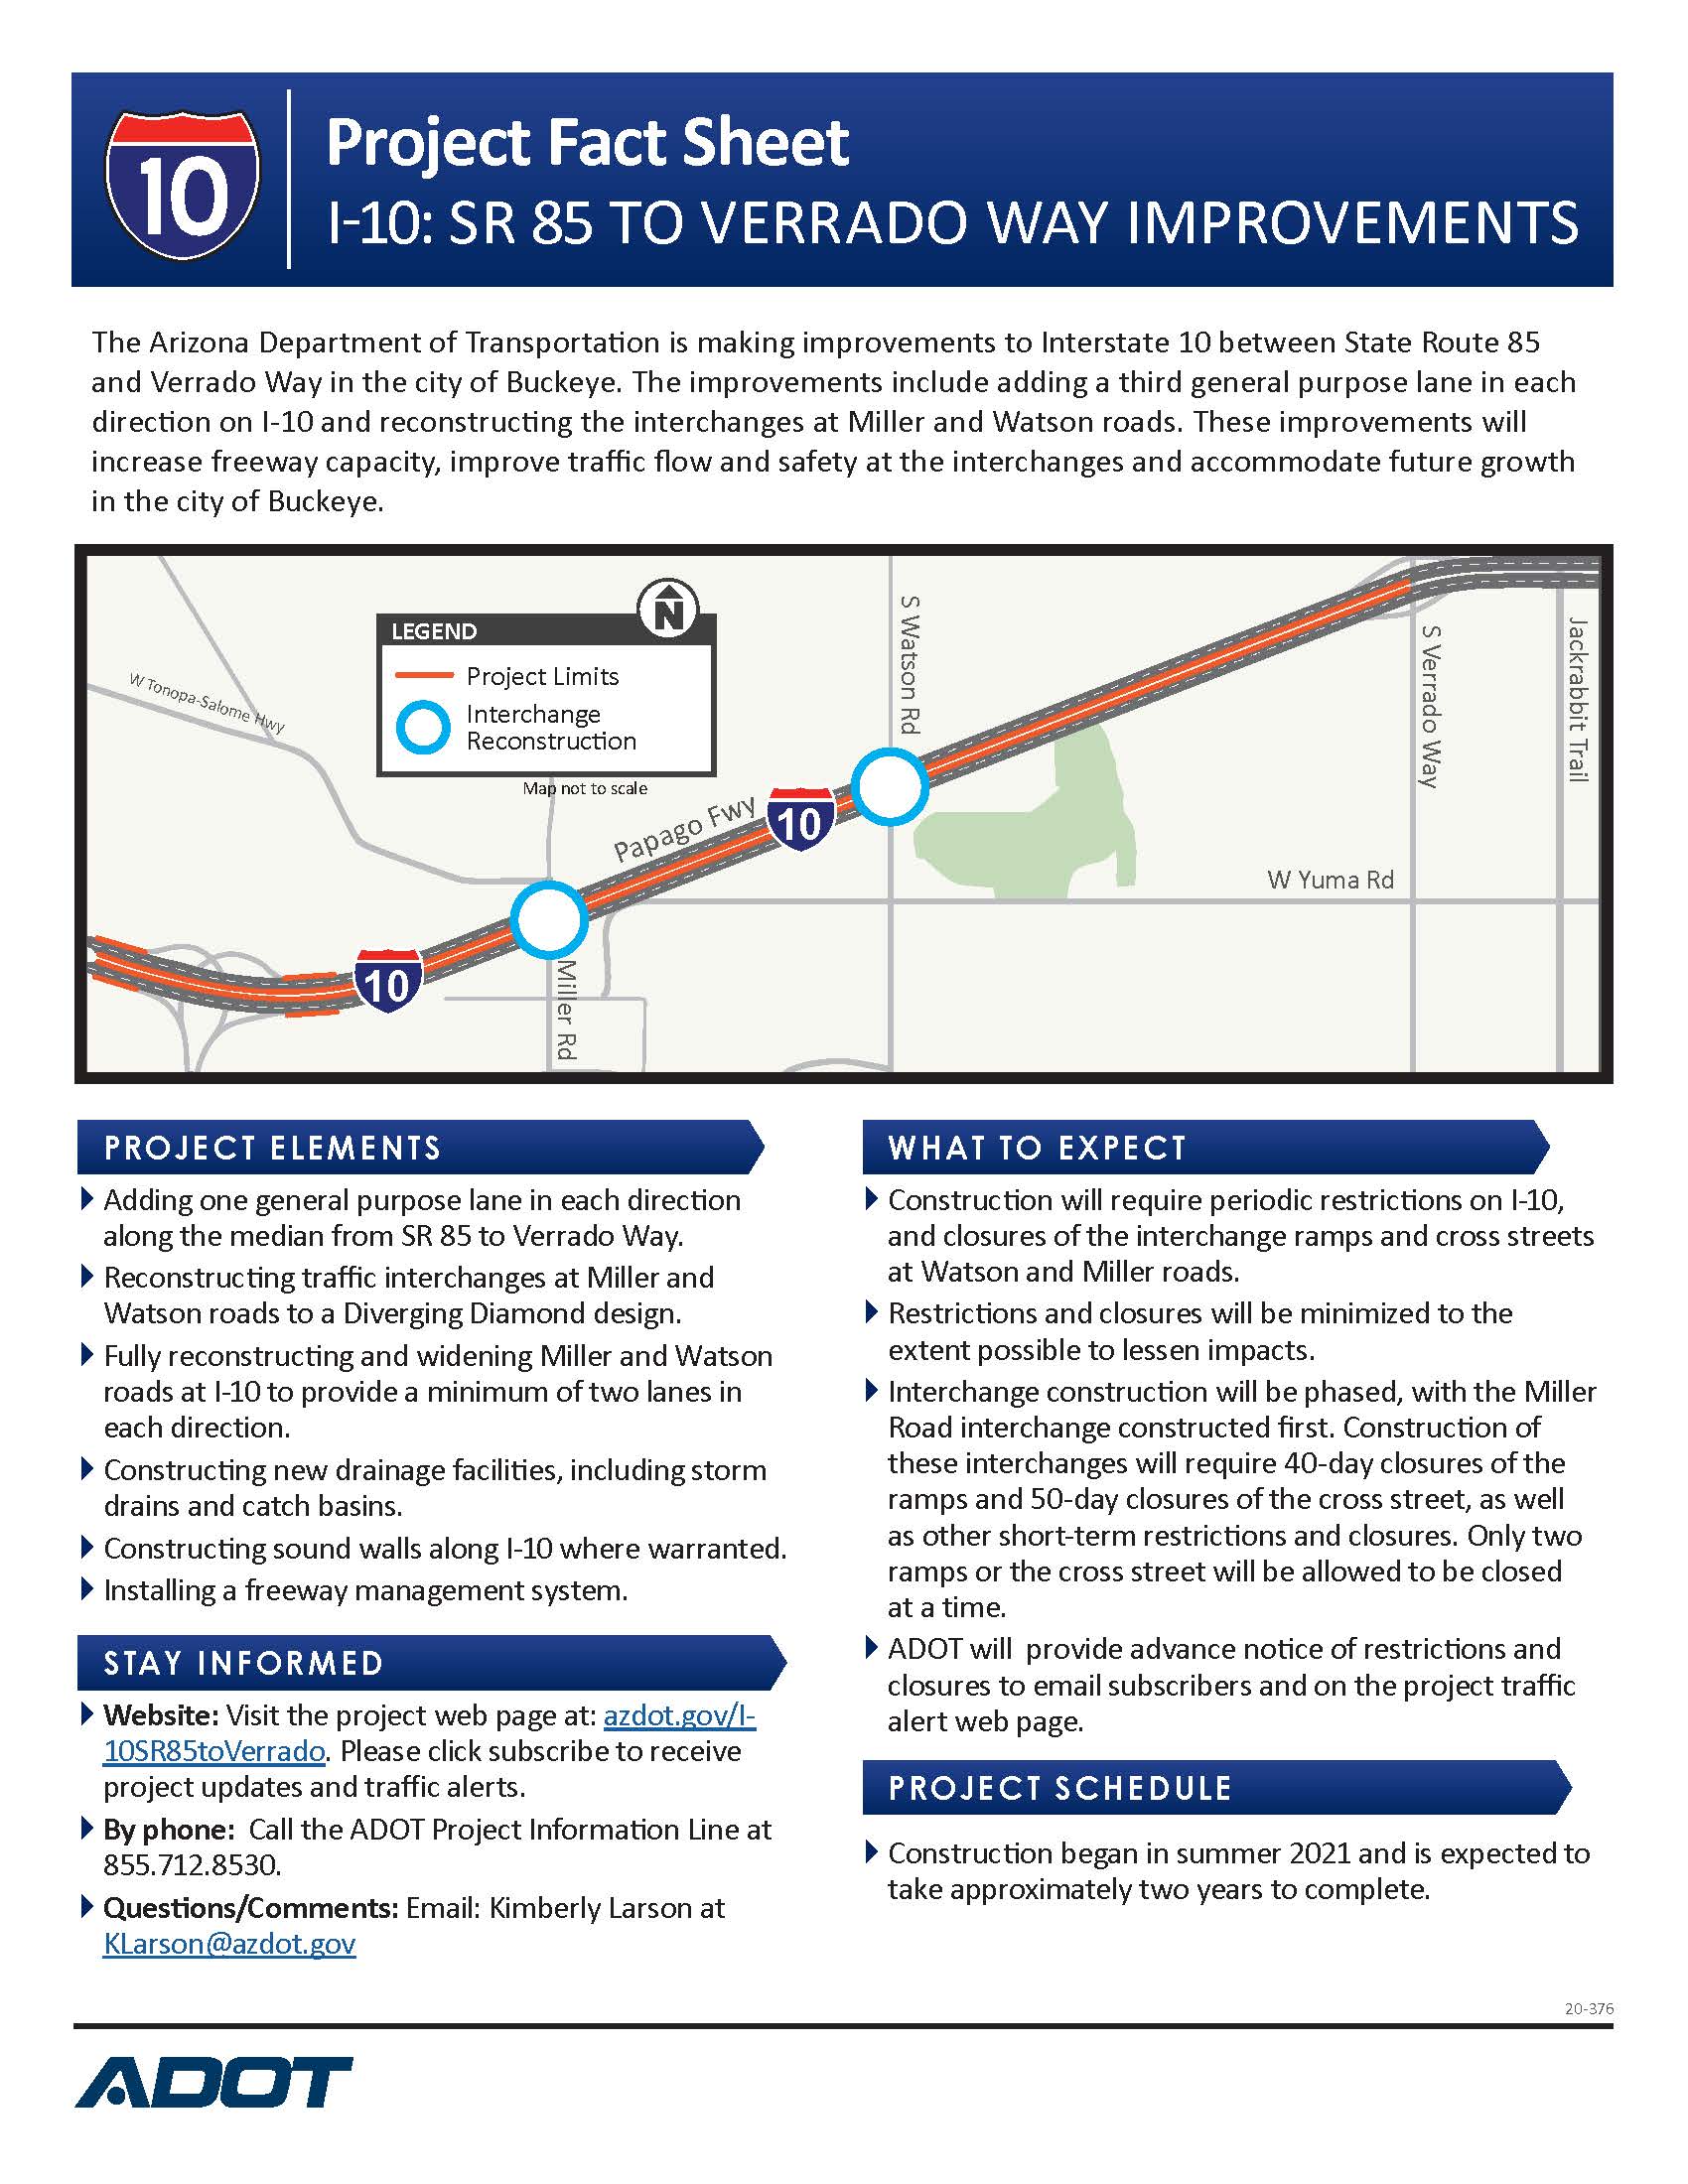 I-10 SR 85 to Verrado Way Fact Sheet English